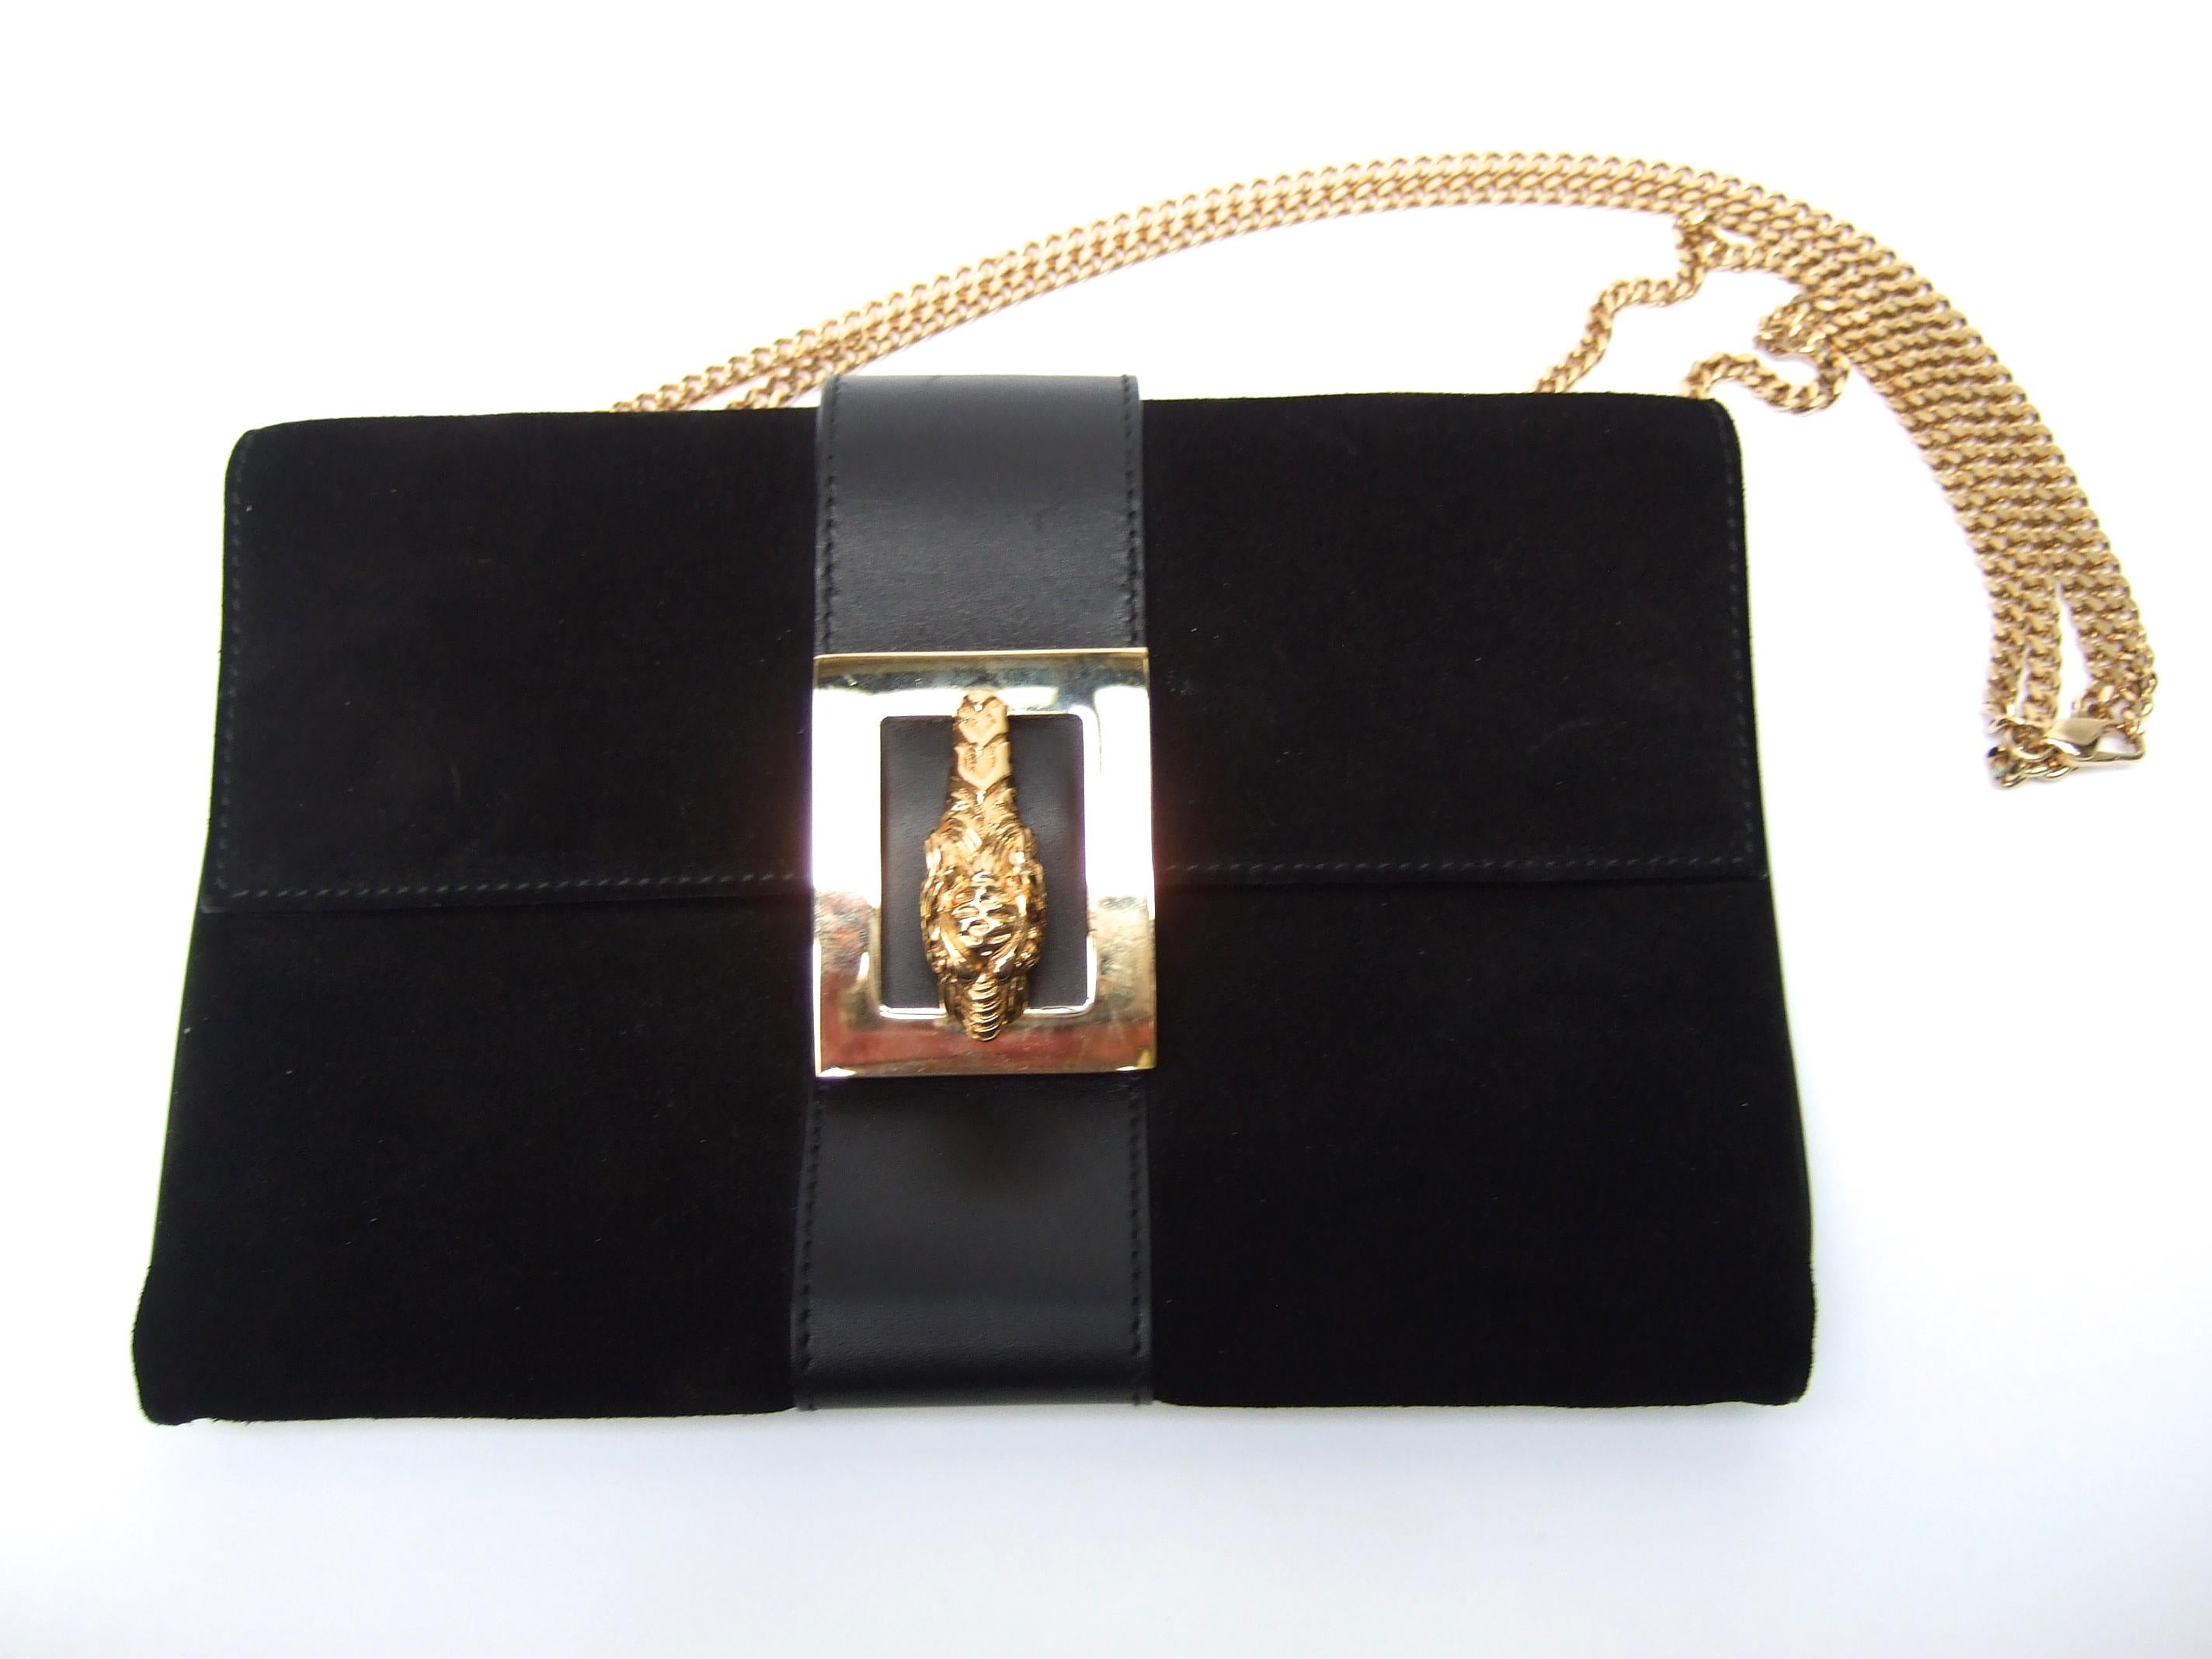 Gucci Italy Rare Black Suede Tiger Emblem Handbag Tom Ford Era c 2000 5